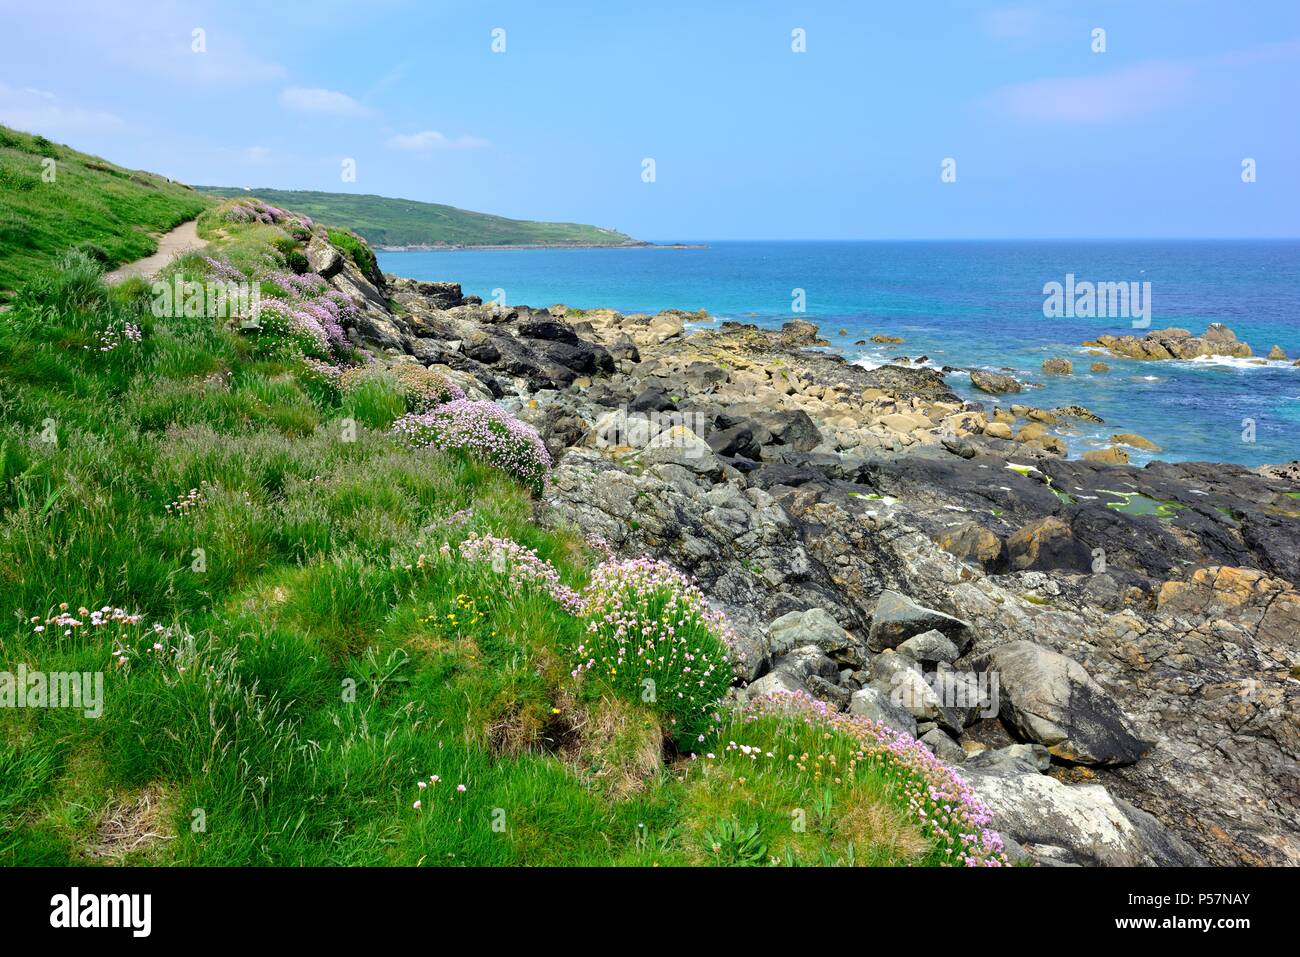 Cornish coastline,St ives,Cornwall, England,UK Stock Photo